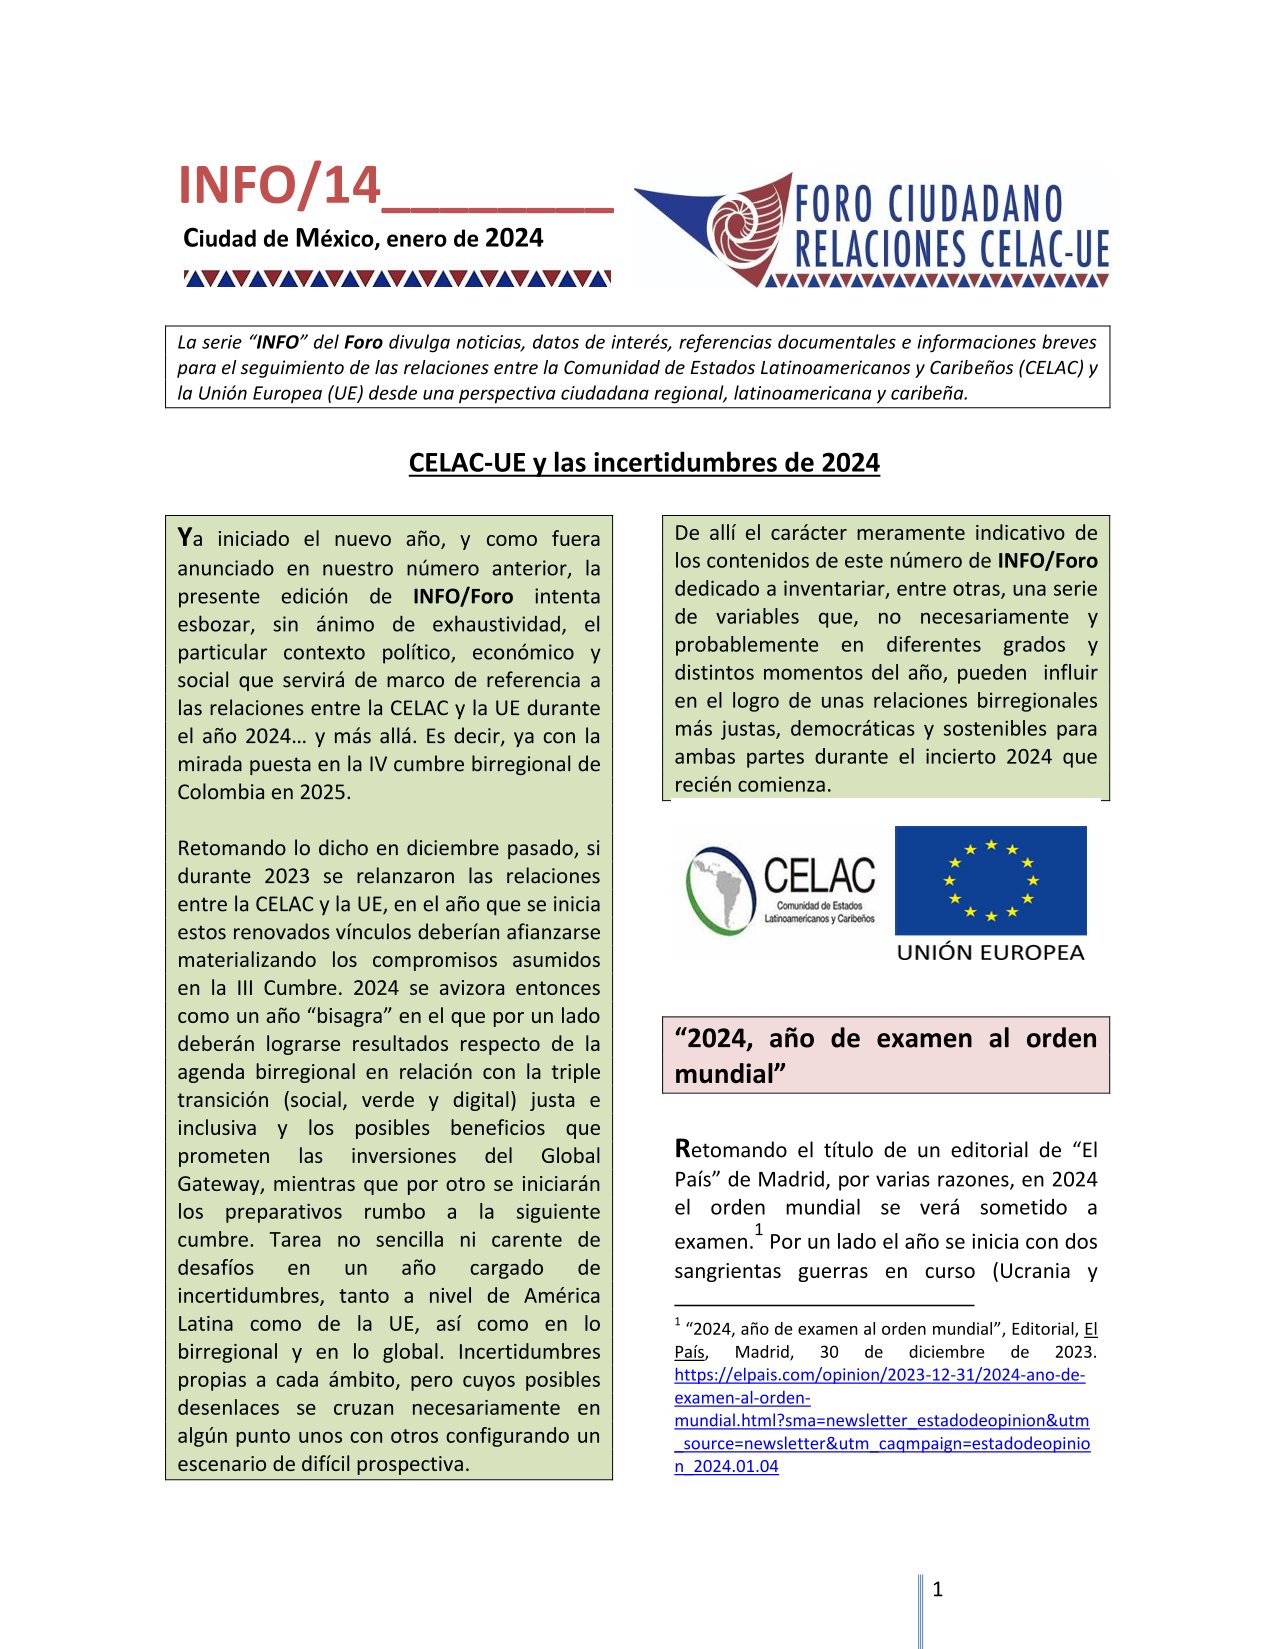 INFO/Foro 14: CELAC-UE y las incertidumbres de 2024, enero 2024